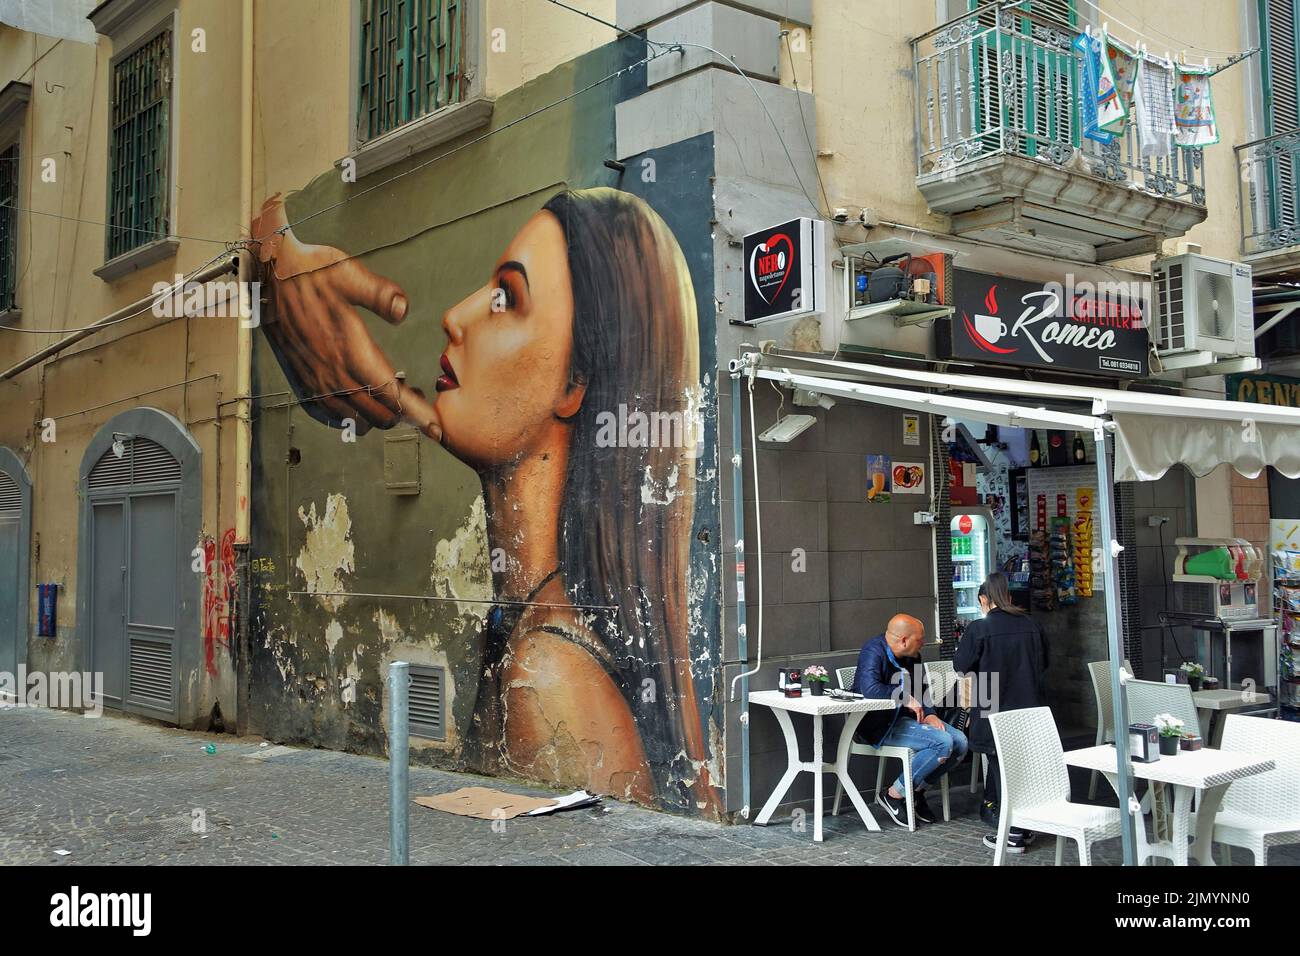 Graffiti murali di Wall art, caffè sul marciapiede, Napoli, Campania, Italia, Europa Foto Stock